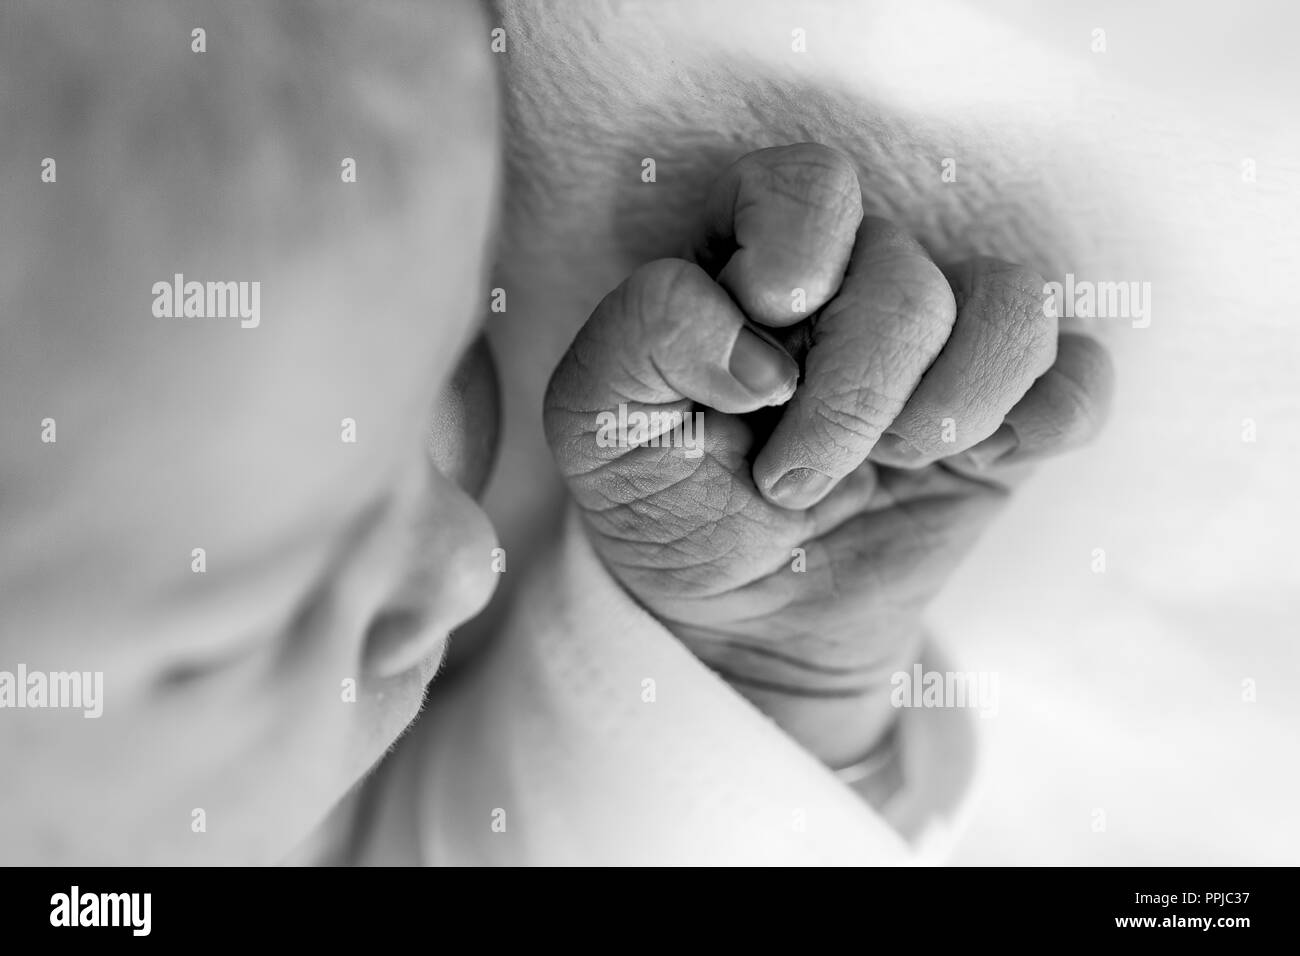 Newborn Babys Hand black and white image. Stock Photo